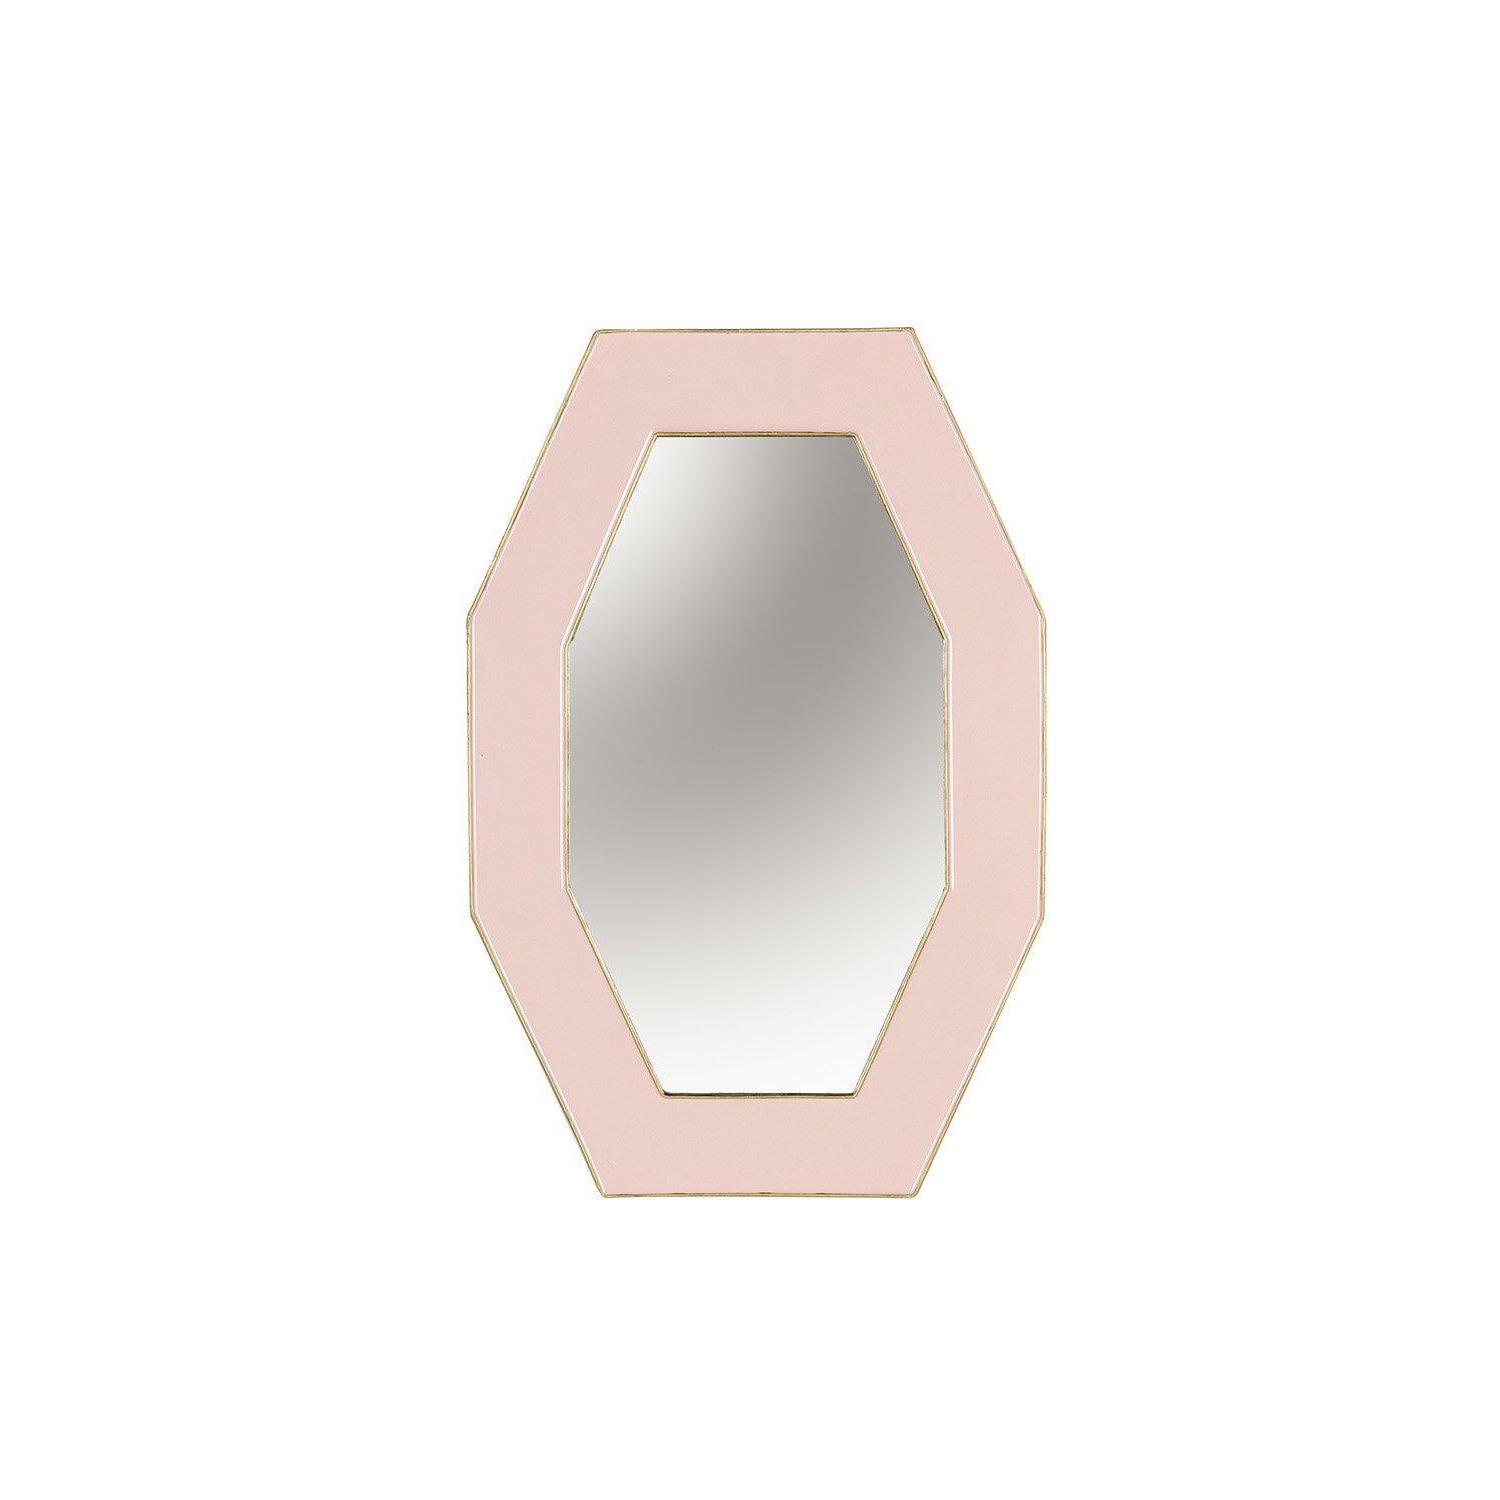 Framed Octagonal Wall Mirror - image 1